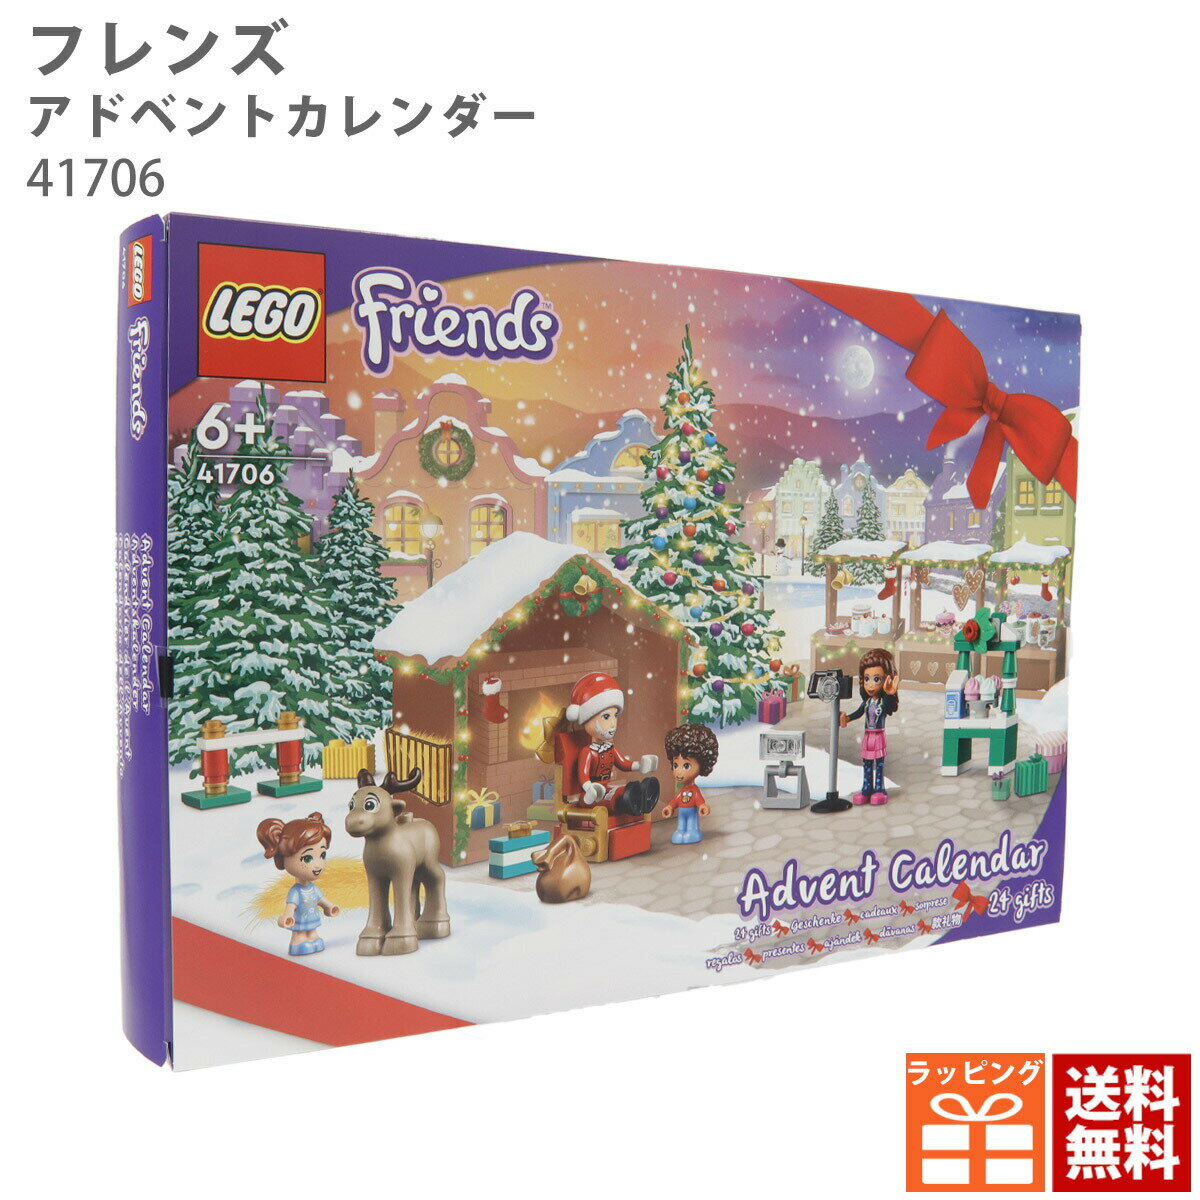 レゴ アドベントカレンダー クリスマス フレンズ 41706 LEGO 正規品 新品 プレゼント ギフト ブロック パズル 知育 クリスマスプレゼント ギフト 大人 子ども 男の子 女の子 クリスマス 通販 おもちゃ